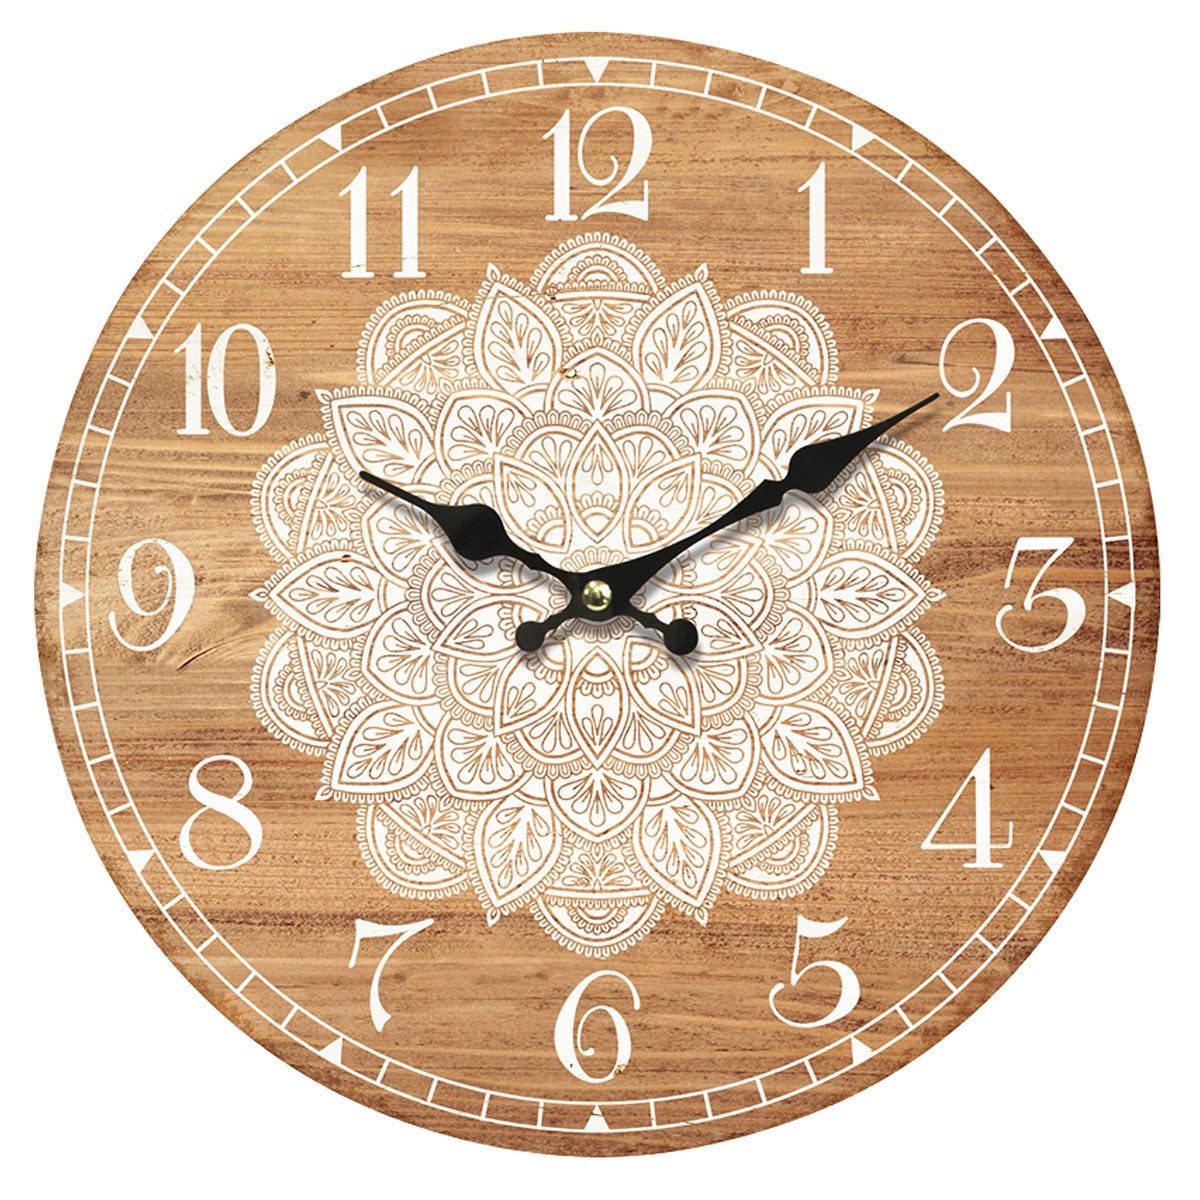 11 ideas de Relojes para cocina  relojes para cocina, decoración de unas,  reloj de pared